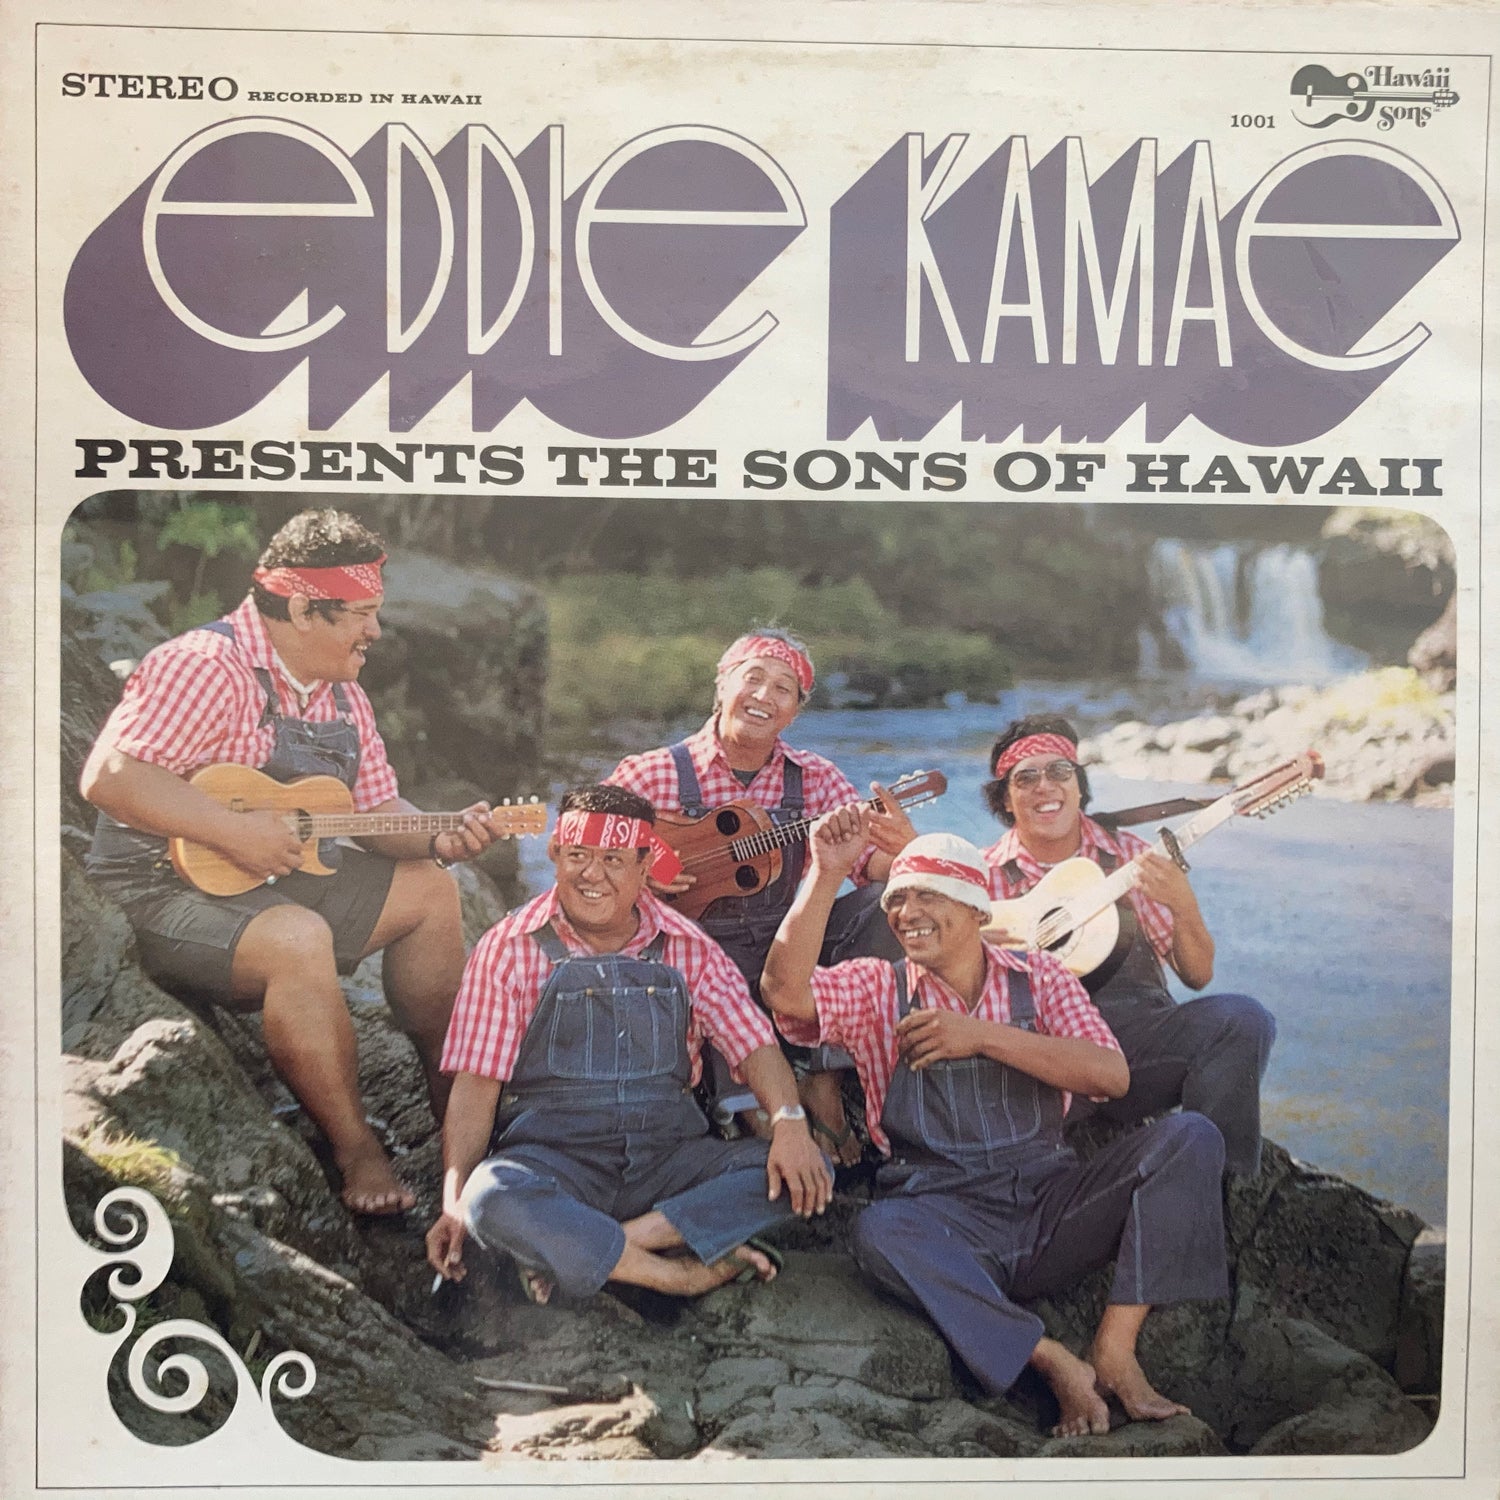 Eddie Kamae Presents The Sons of Hawaii [HS-1001]